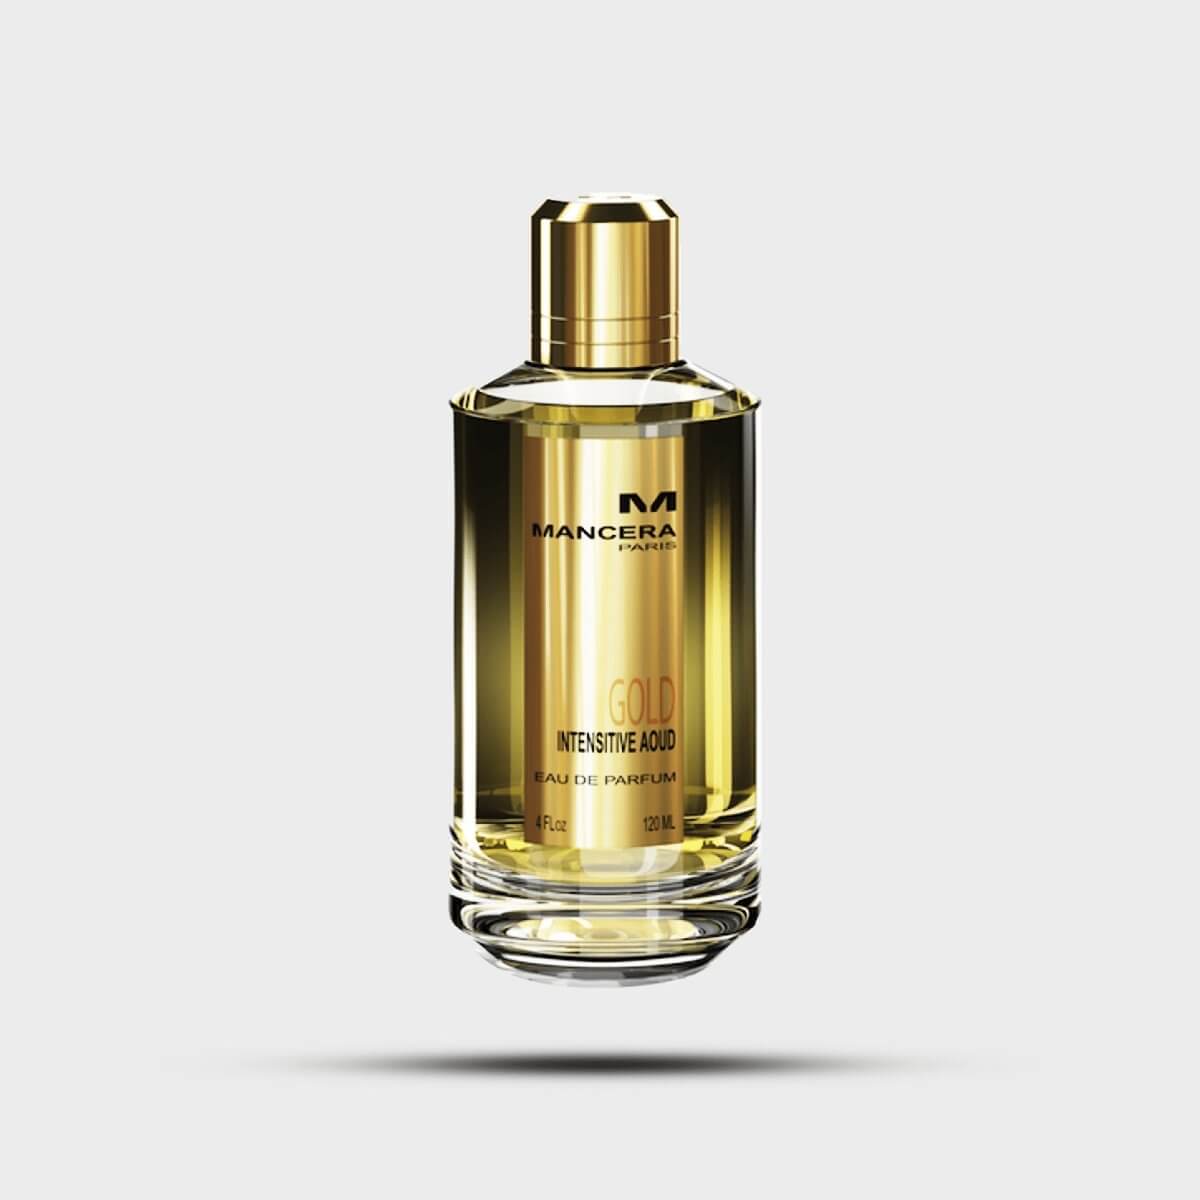 Gold Intensive Aoud by Mancera 120ml - La Maison Du Parfum